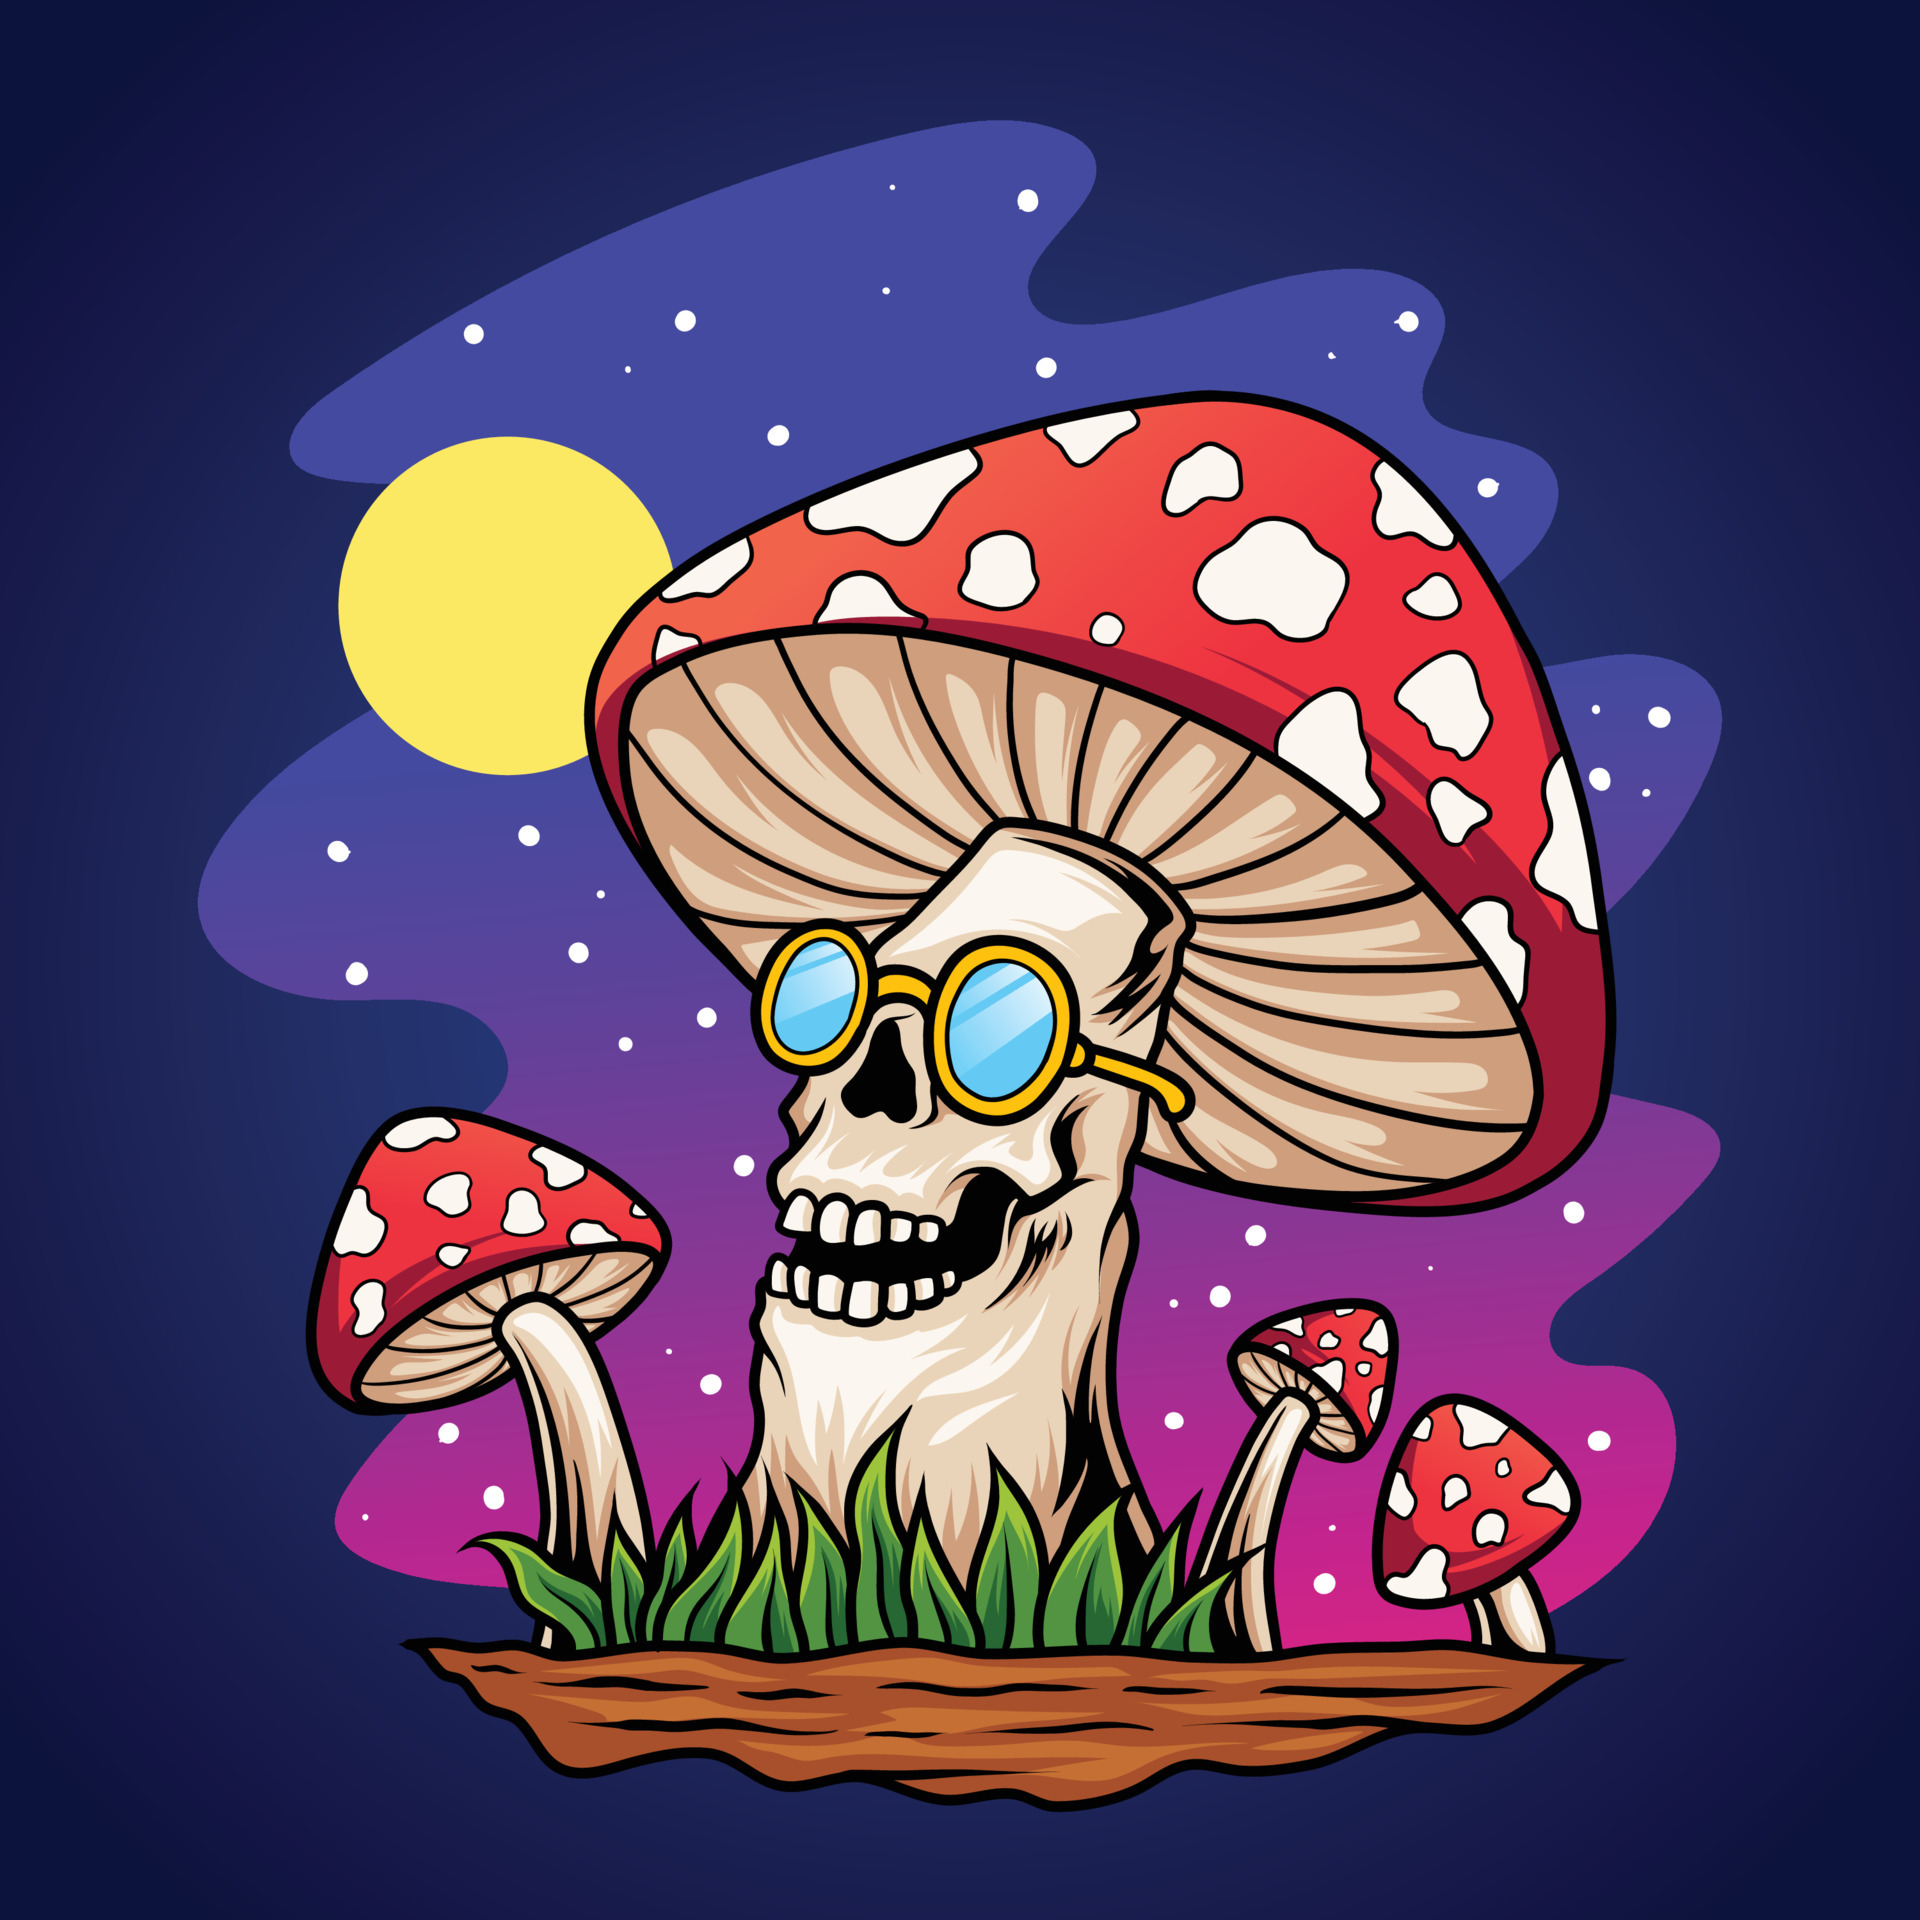 Trippy skull mushroom cartoon 6413679 Vector Art at Vecteezy